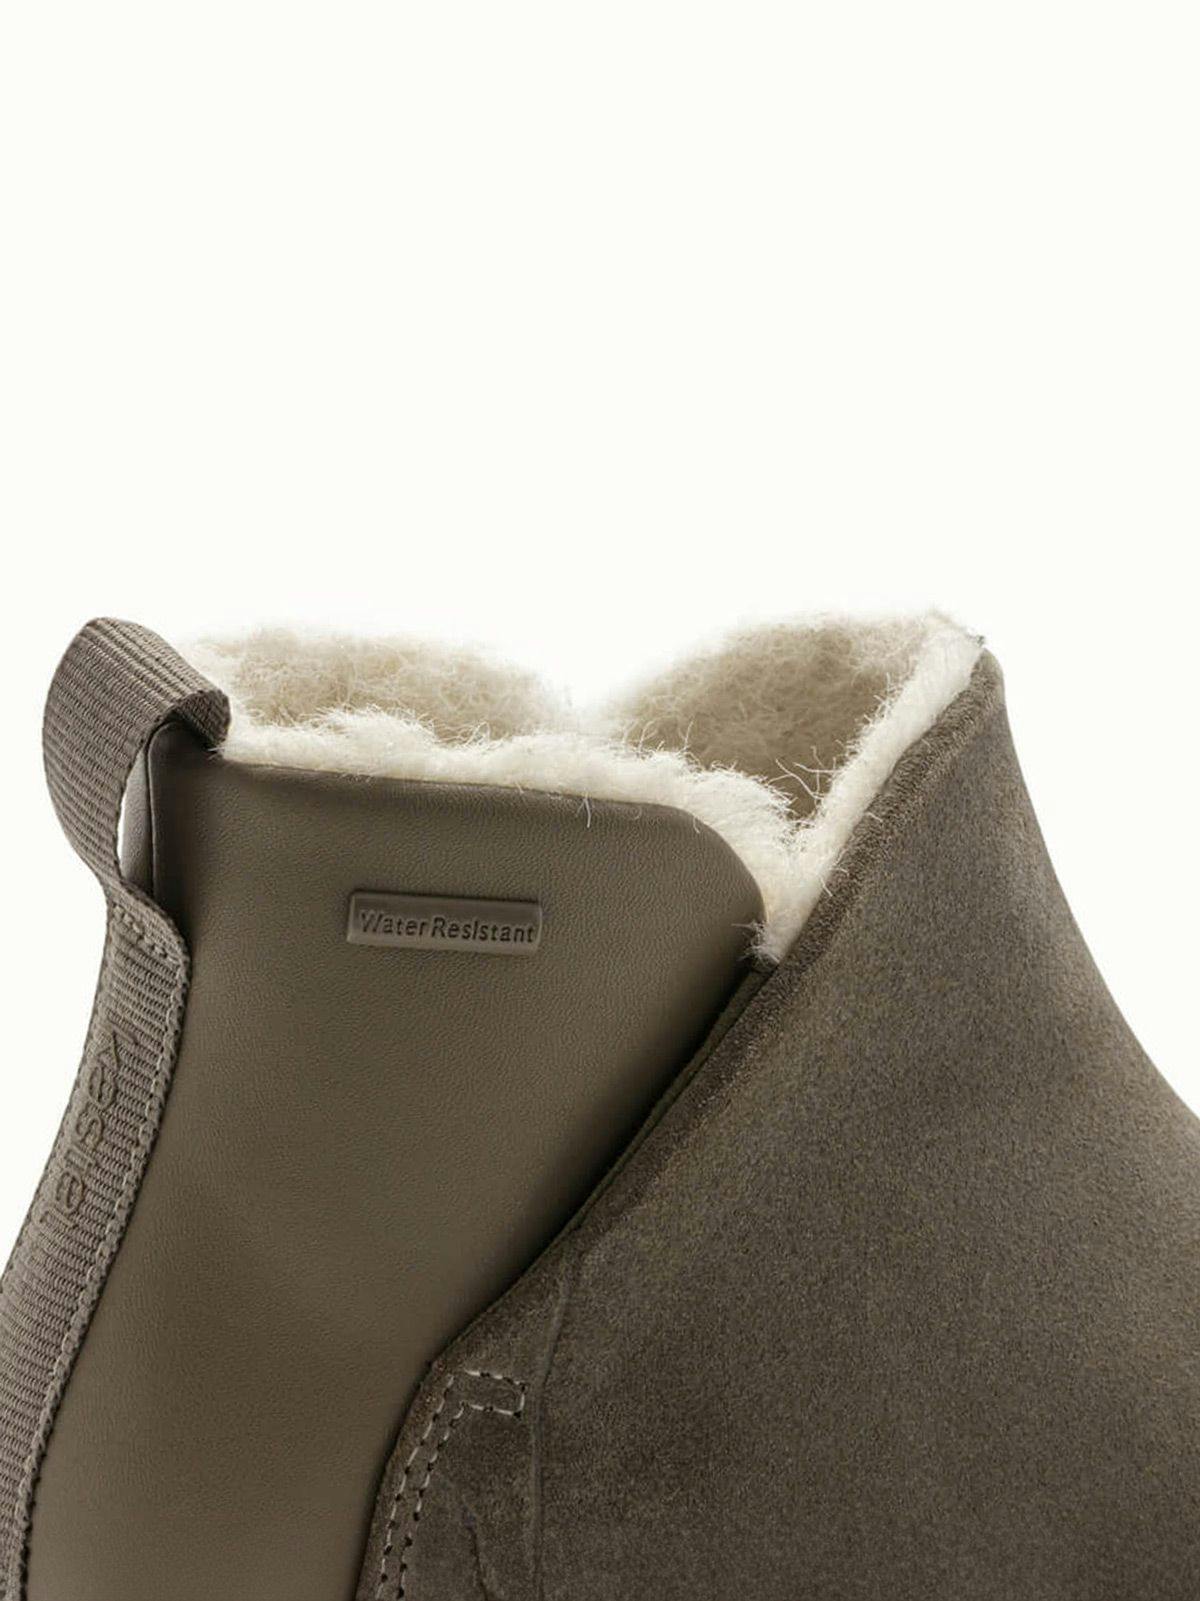 Med en grov og tykk yttersåle, har Røros vinterstøvler både vanntett skinn og ullfór for å holde deg varm og komfortabel.